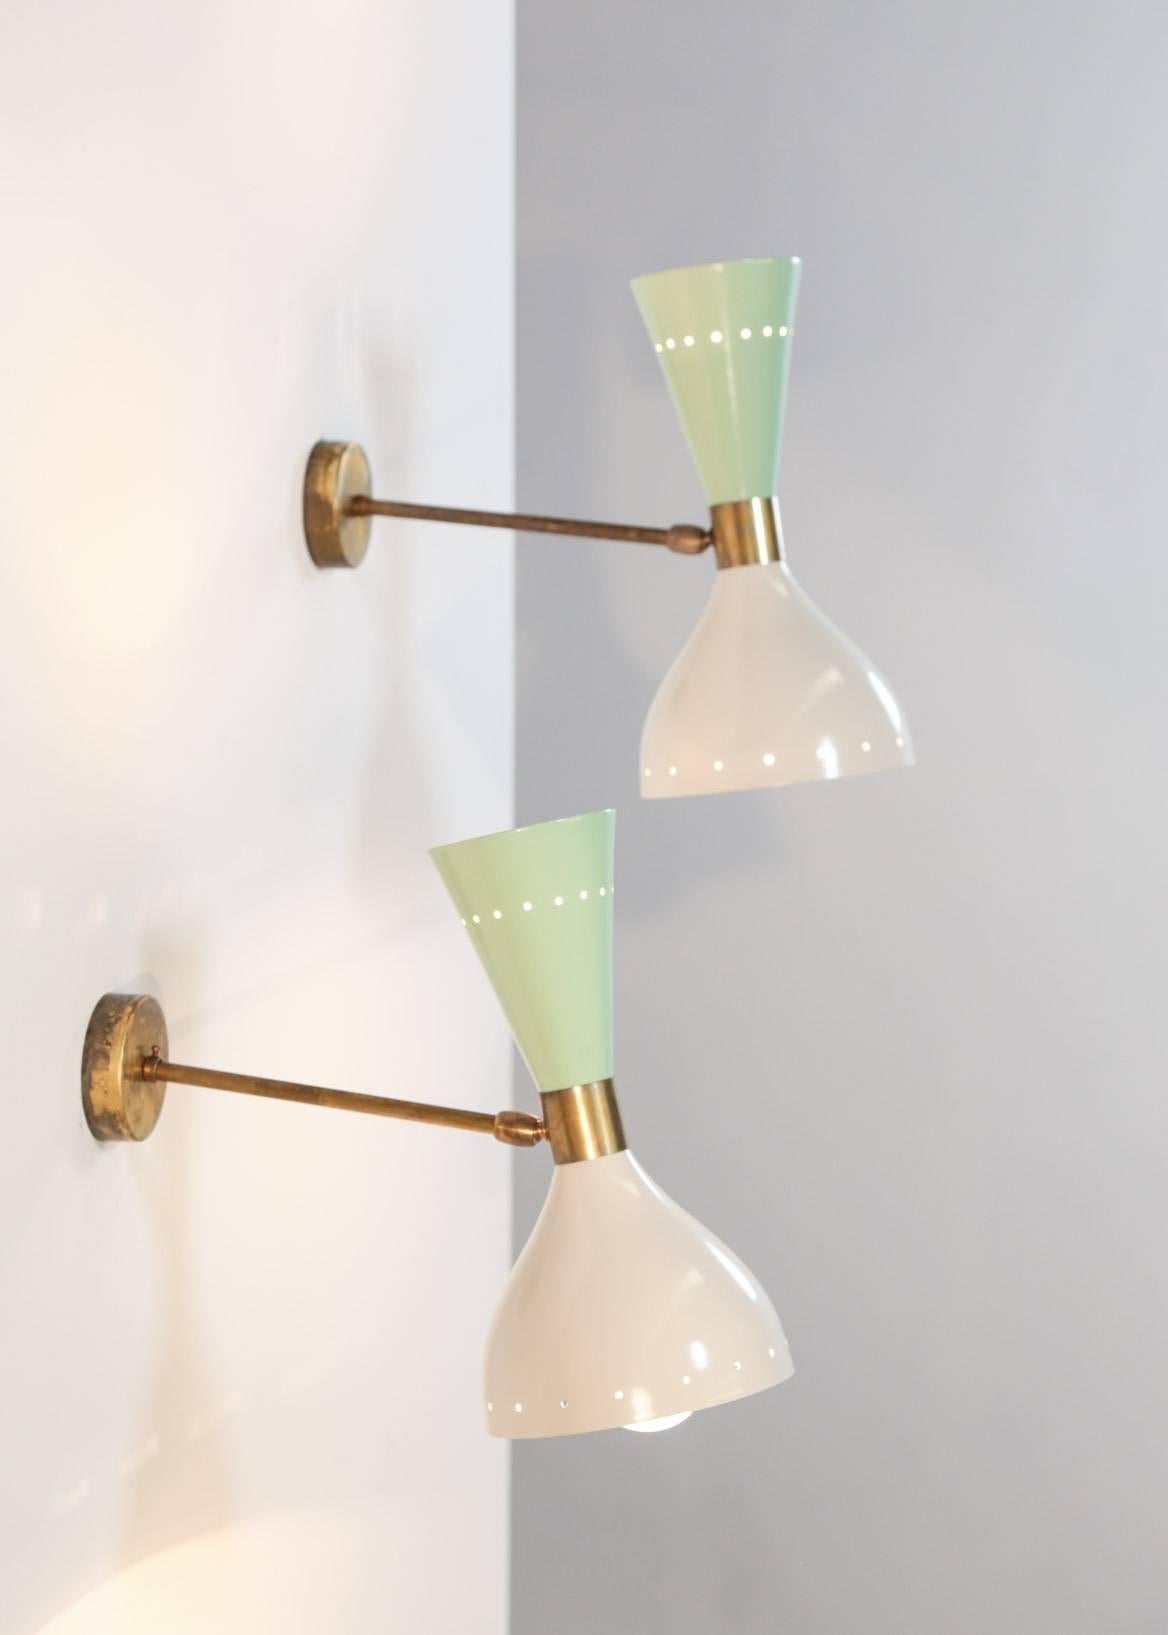 Moderne Diabolo-Leuchte. Die Lampenschirme sind verstellbar und können in verschiedene Richtungen leuchten.
Zwei Glühbirnen pro Lampenschirm.
Ausgezeichneter Zustand, schöne skulpturale und dekorative Wandleuchte Stilnovo.